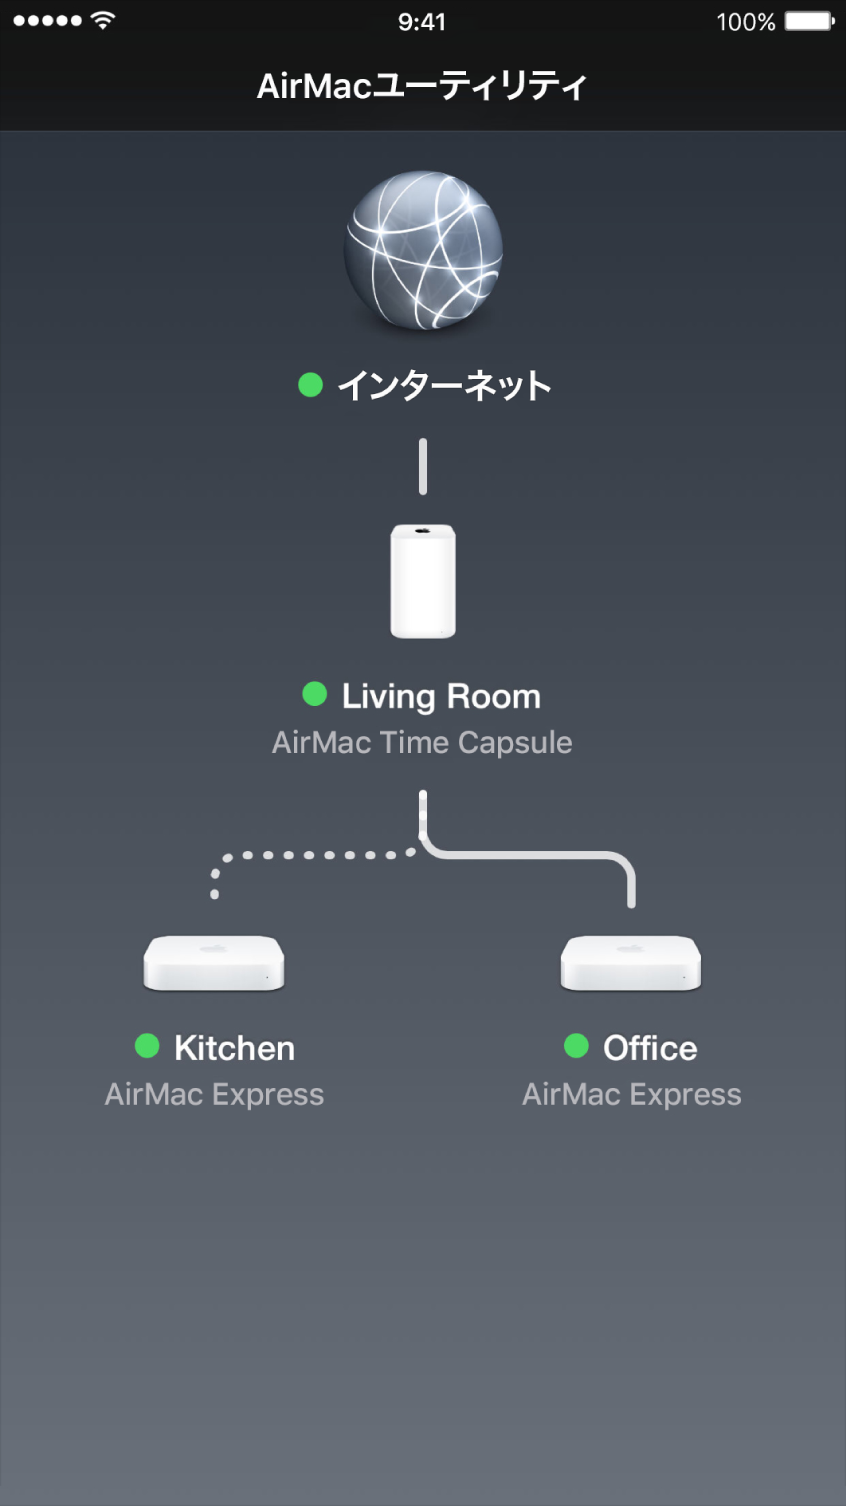 iOS 用の「AirMac ユーティリティ」の概要図。